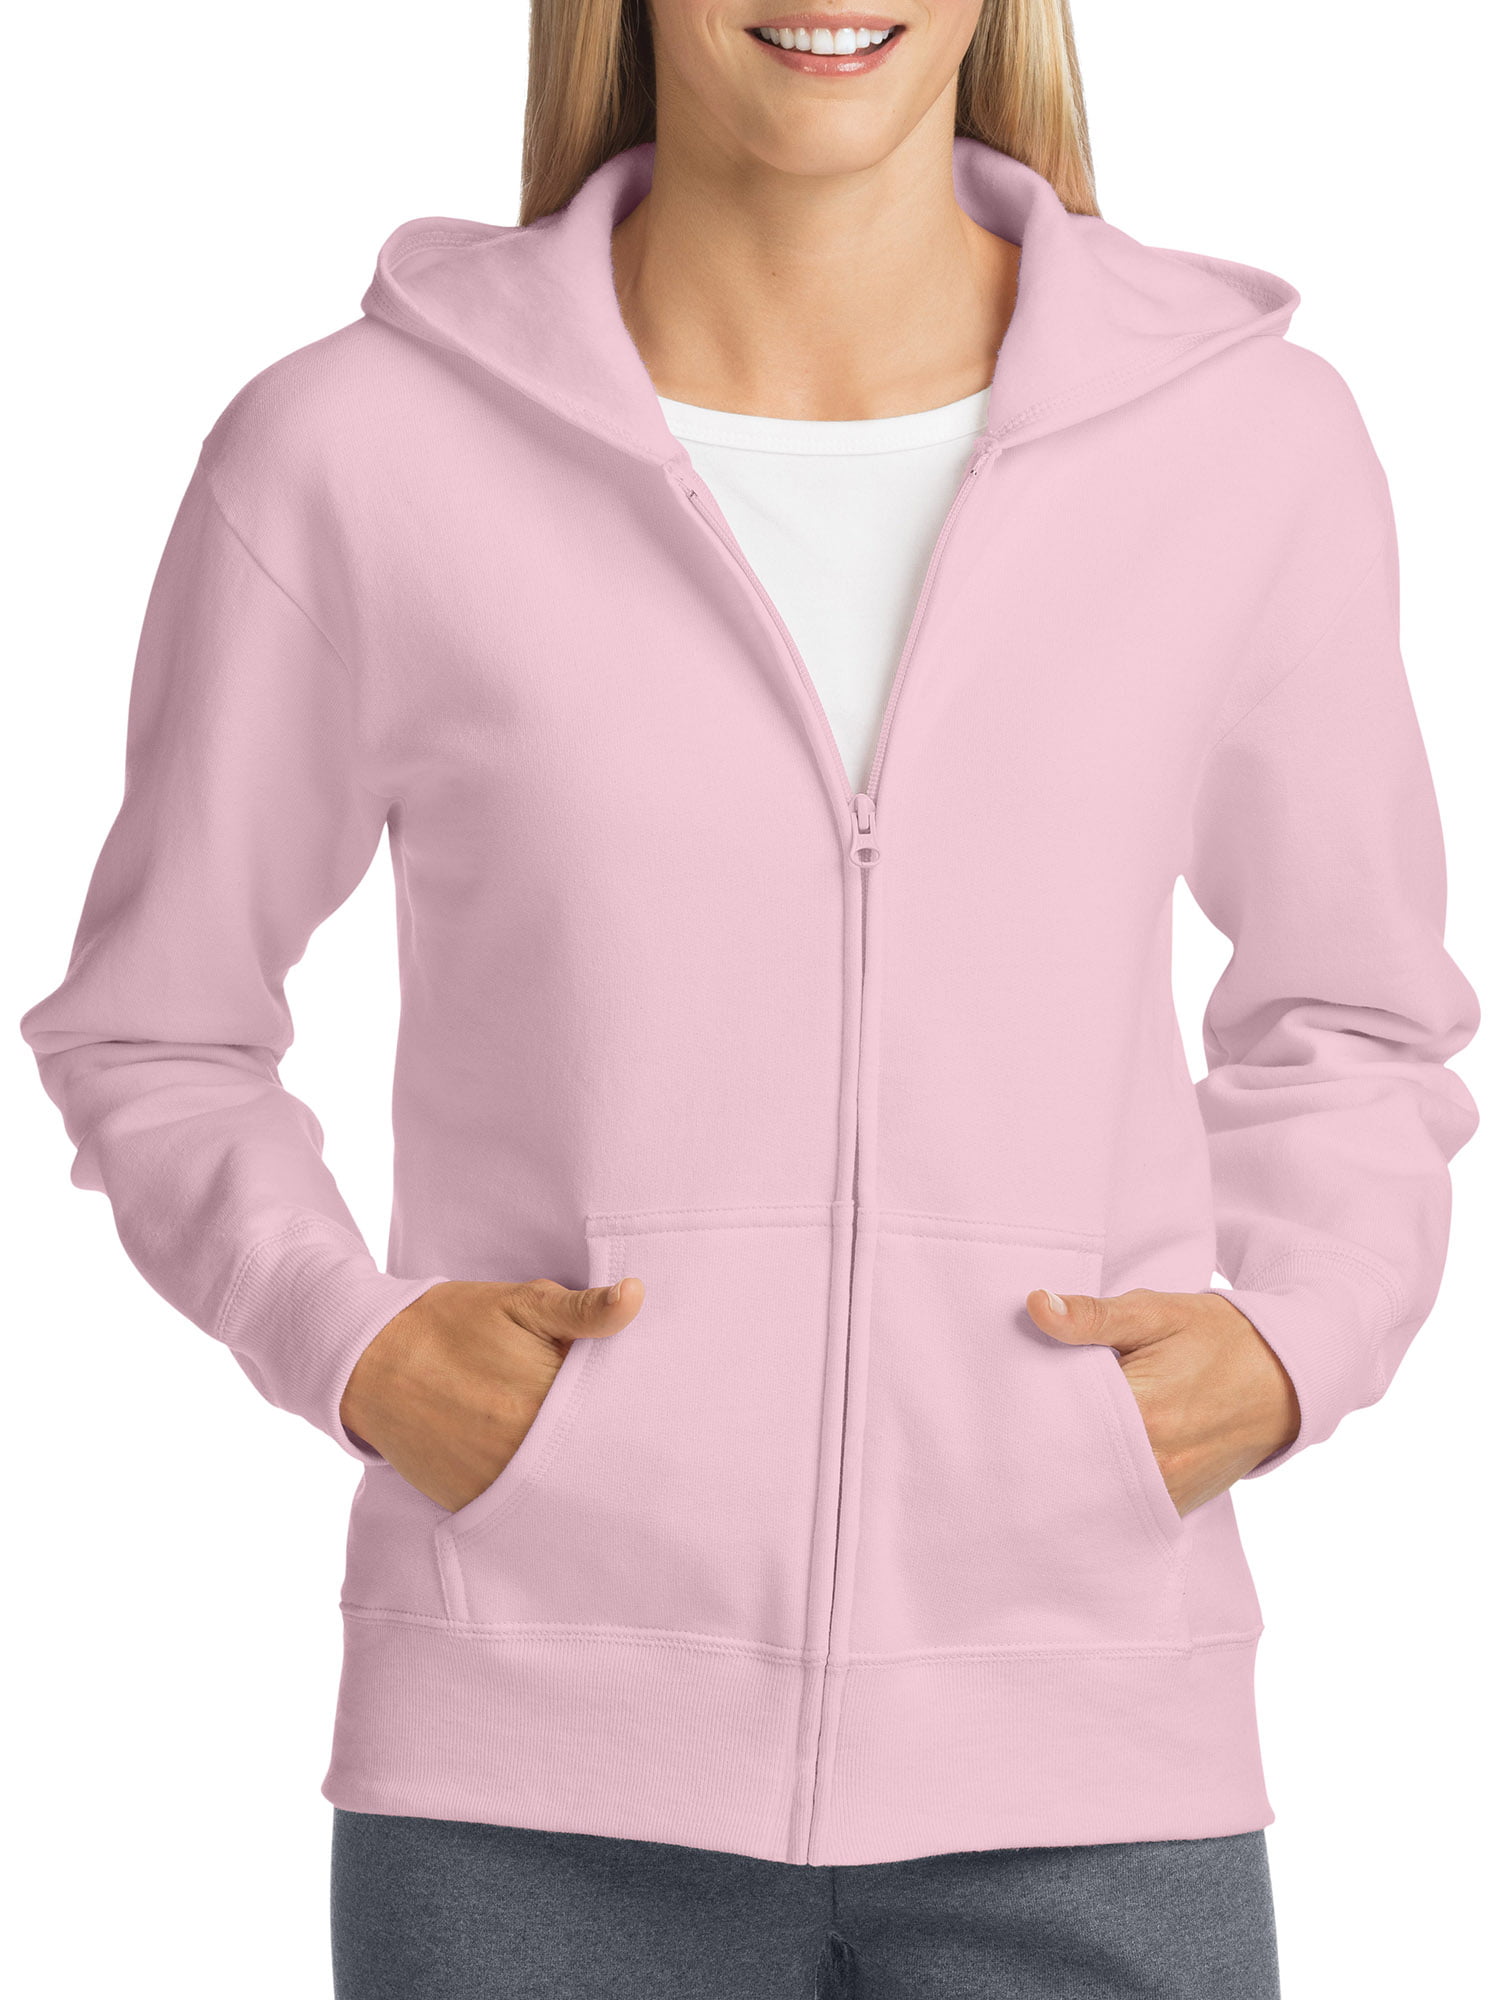 Hanes - Hanes ComfortSoft EcoSmart Women's Fleece Full-Zip Hoodie ...